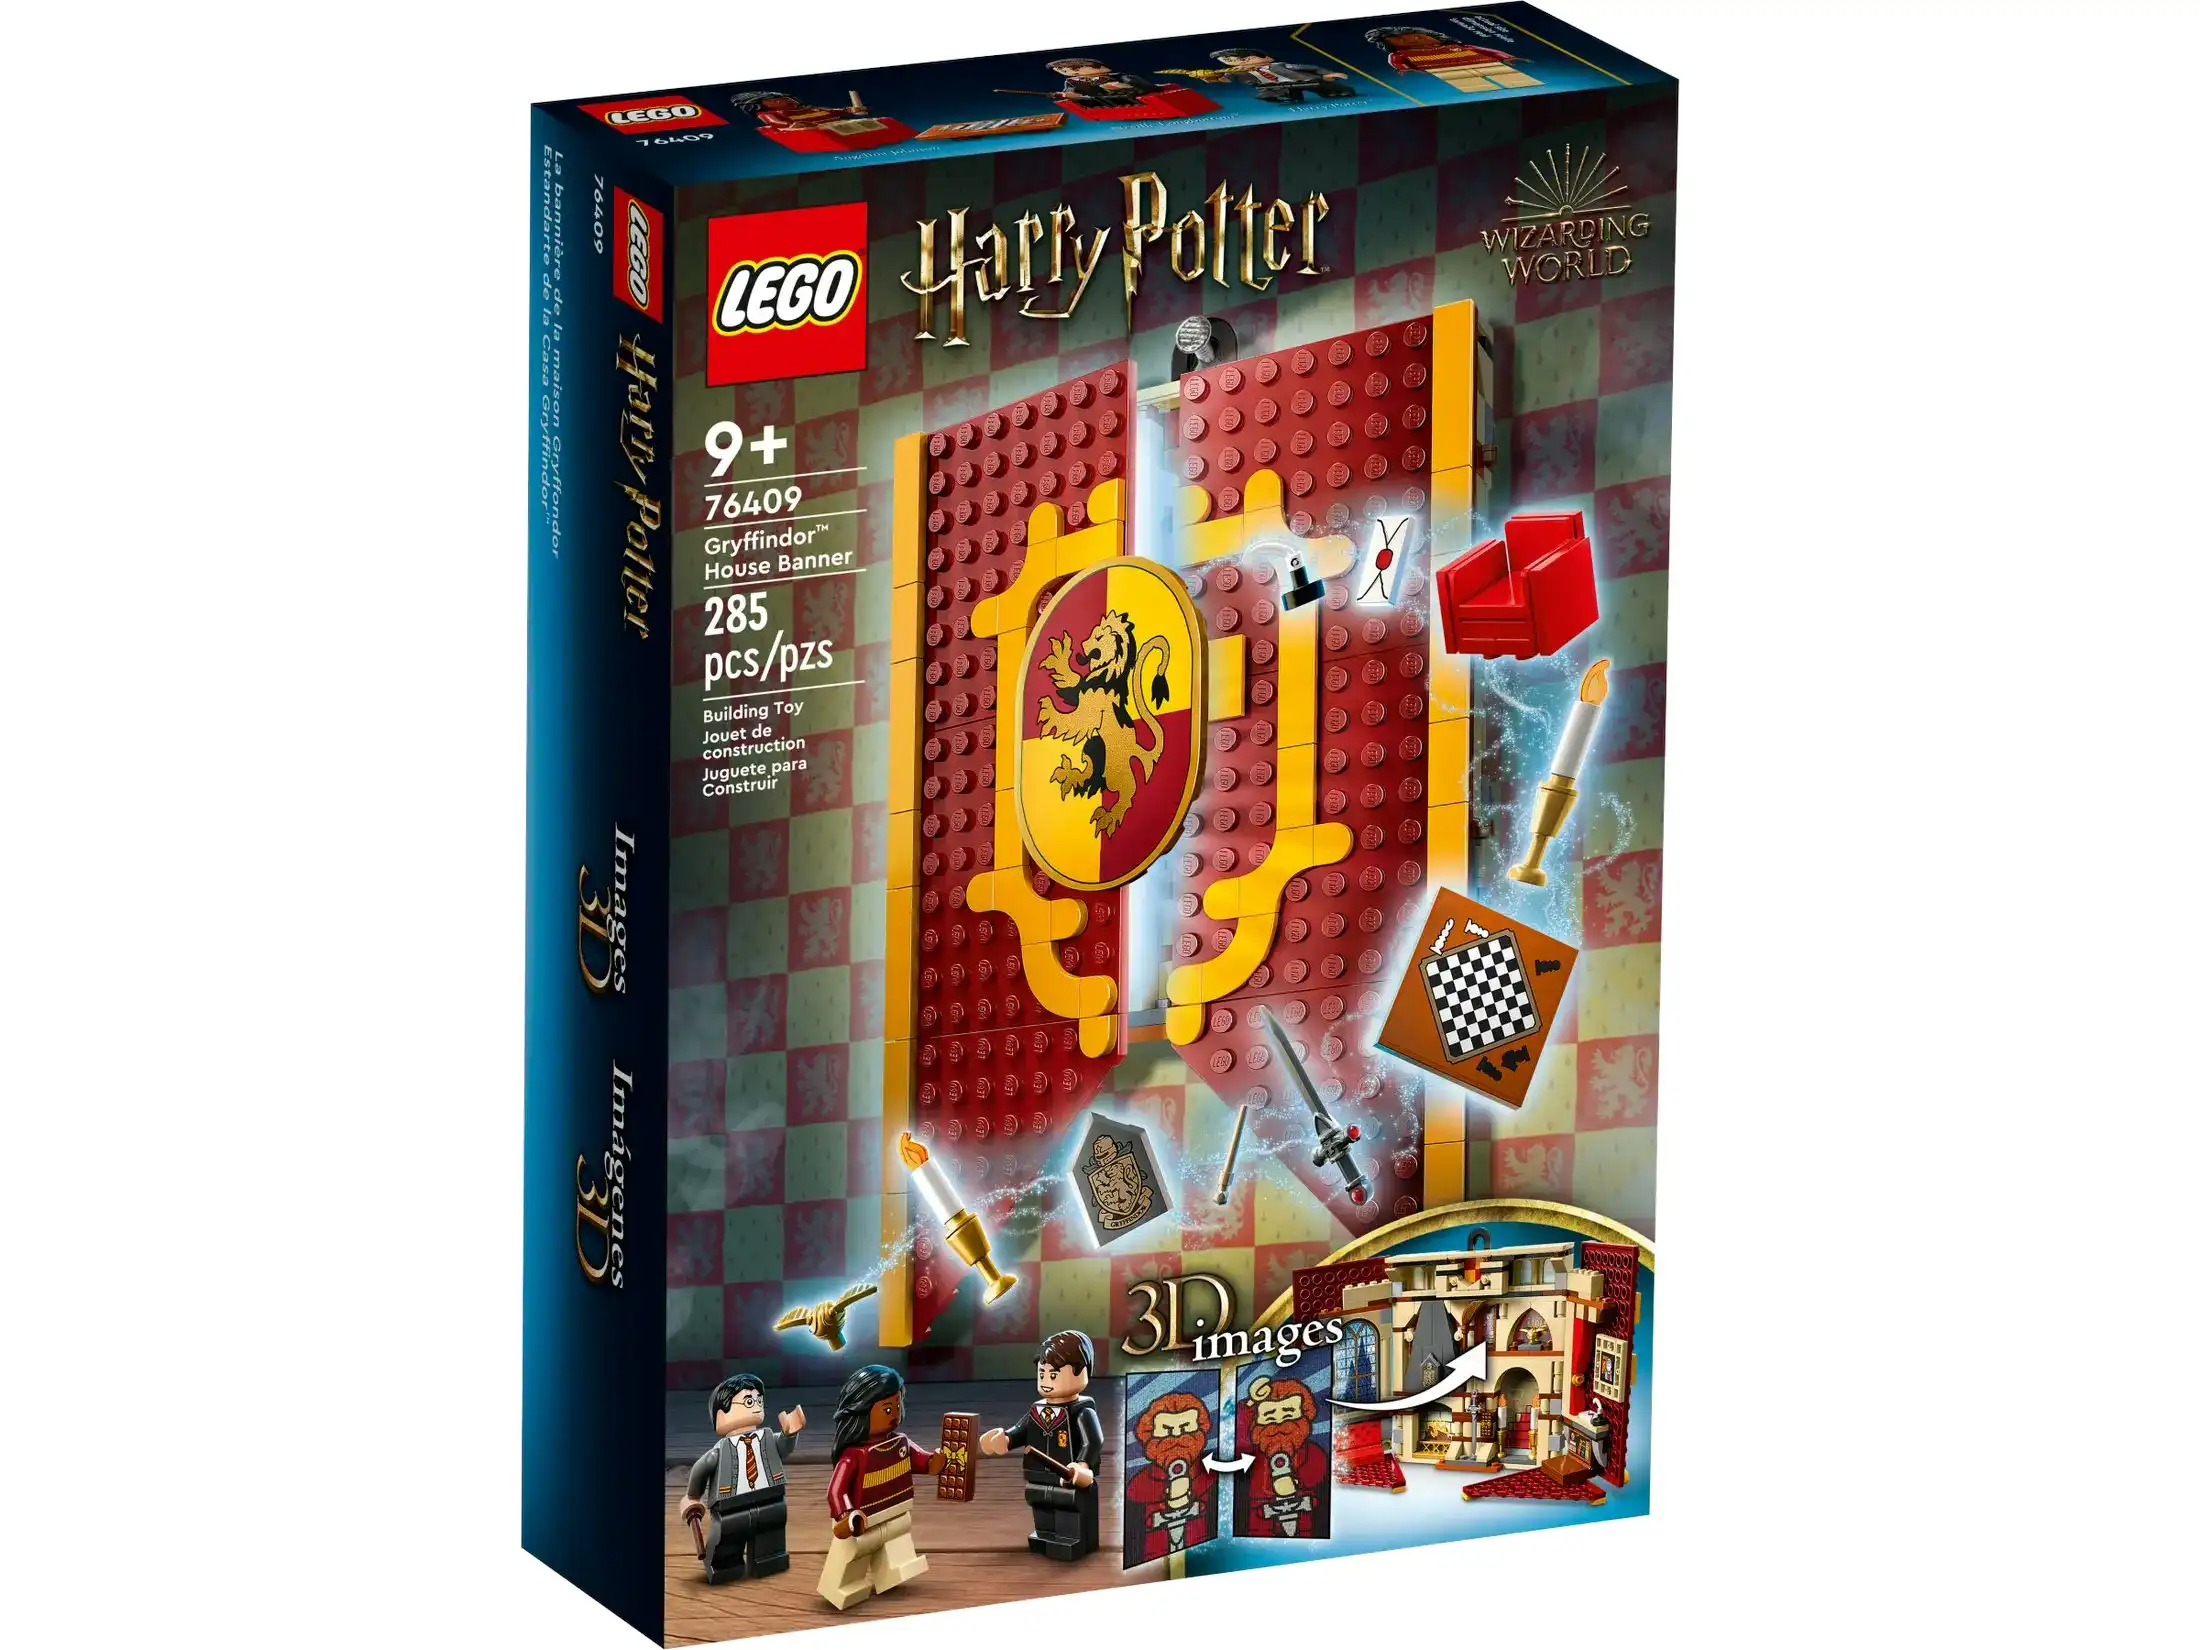 LEGO 76409 Gryffindor House Banner - Harry Potter